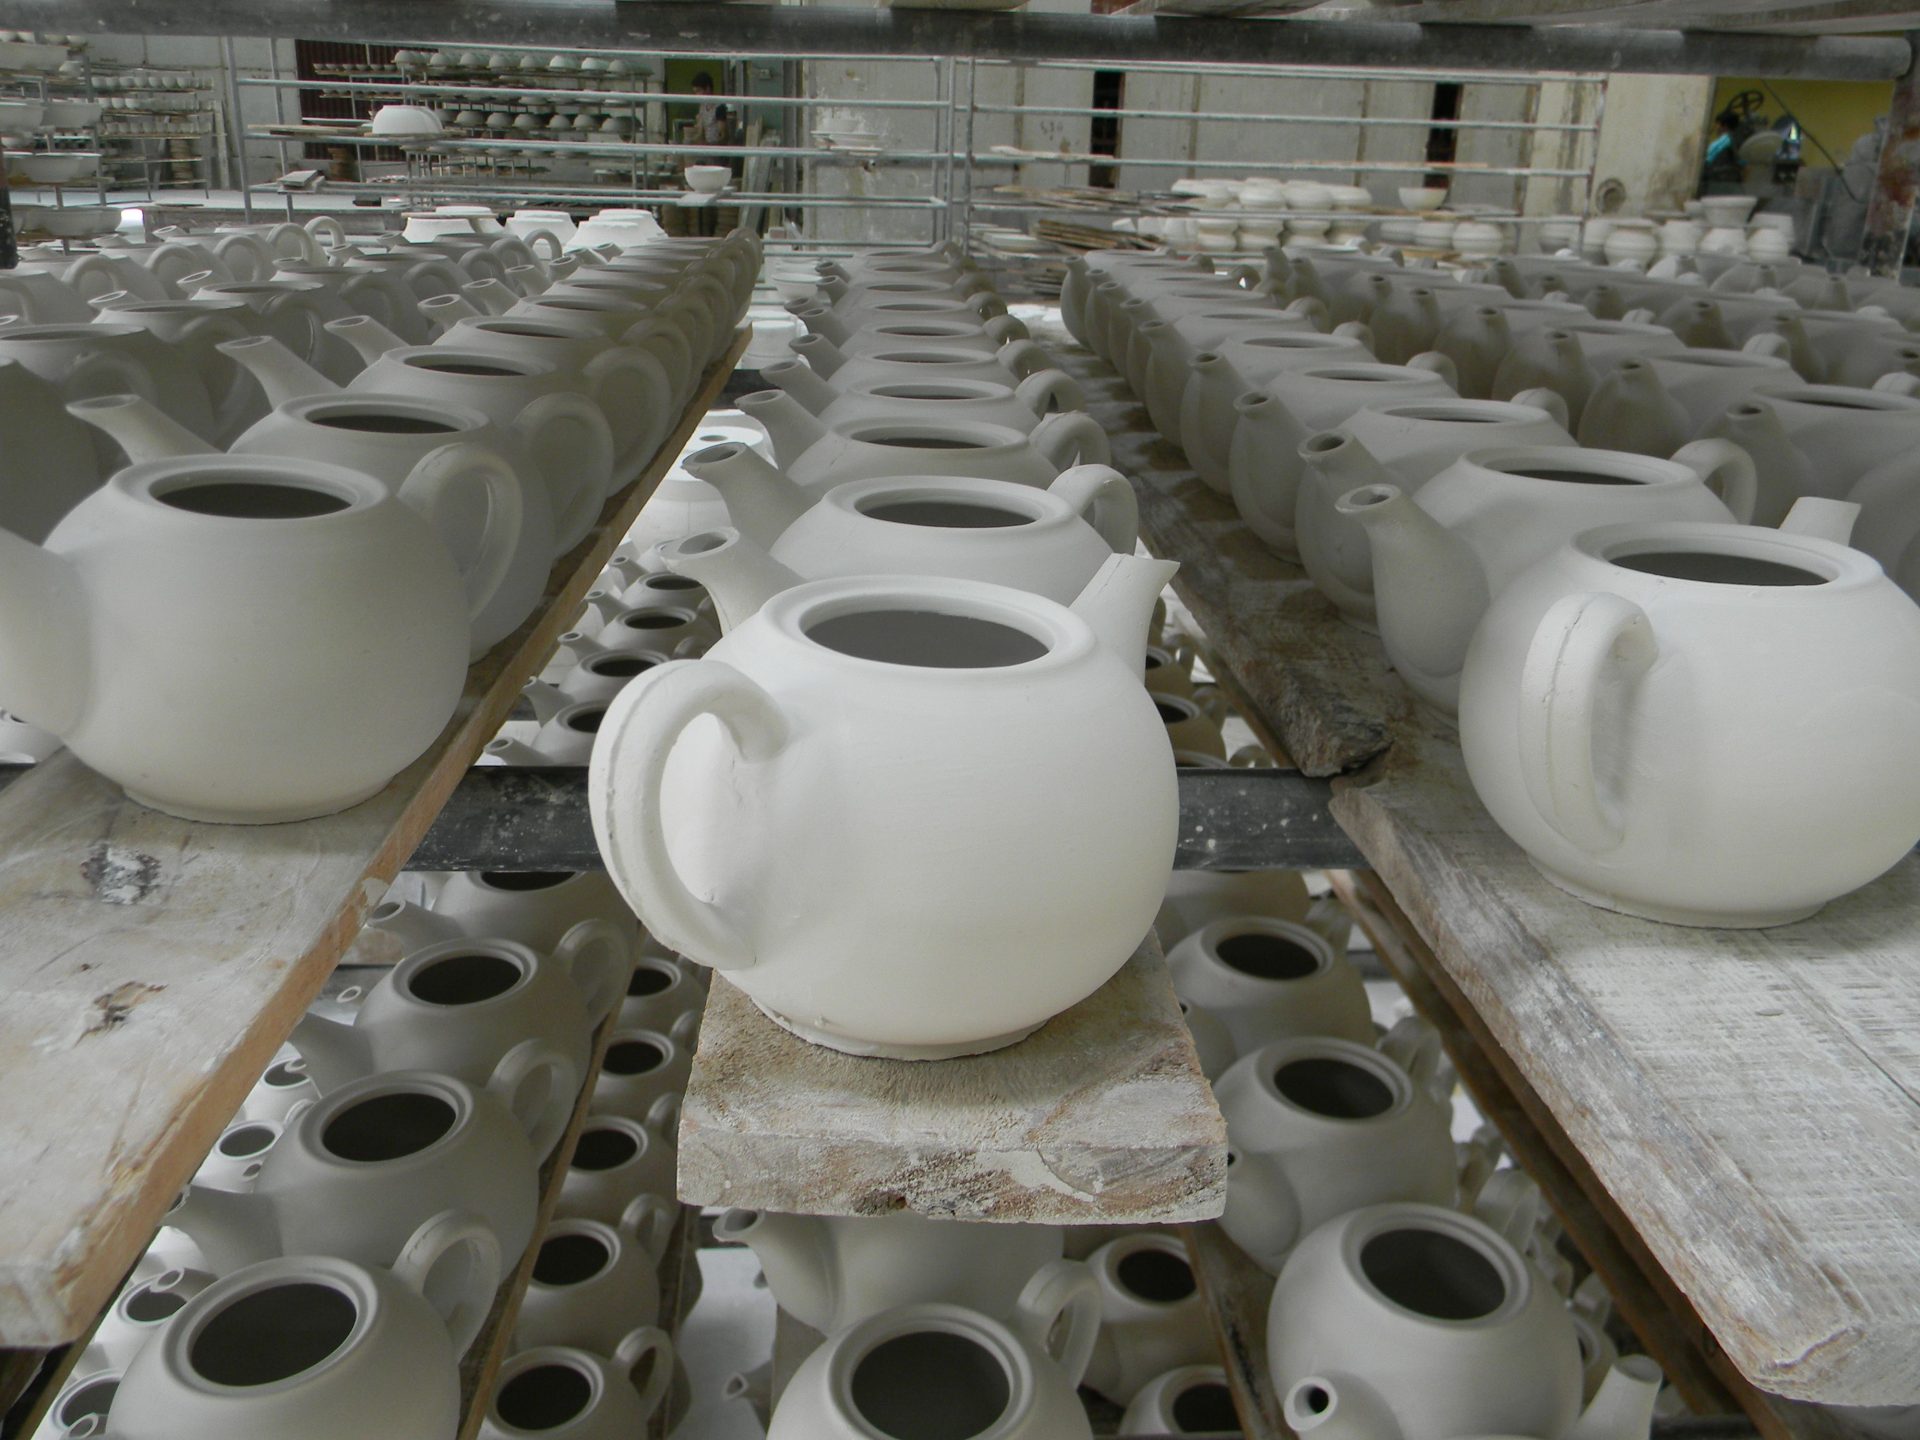 Ohio Ceramics